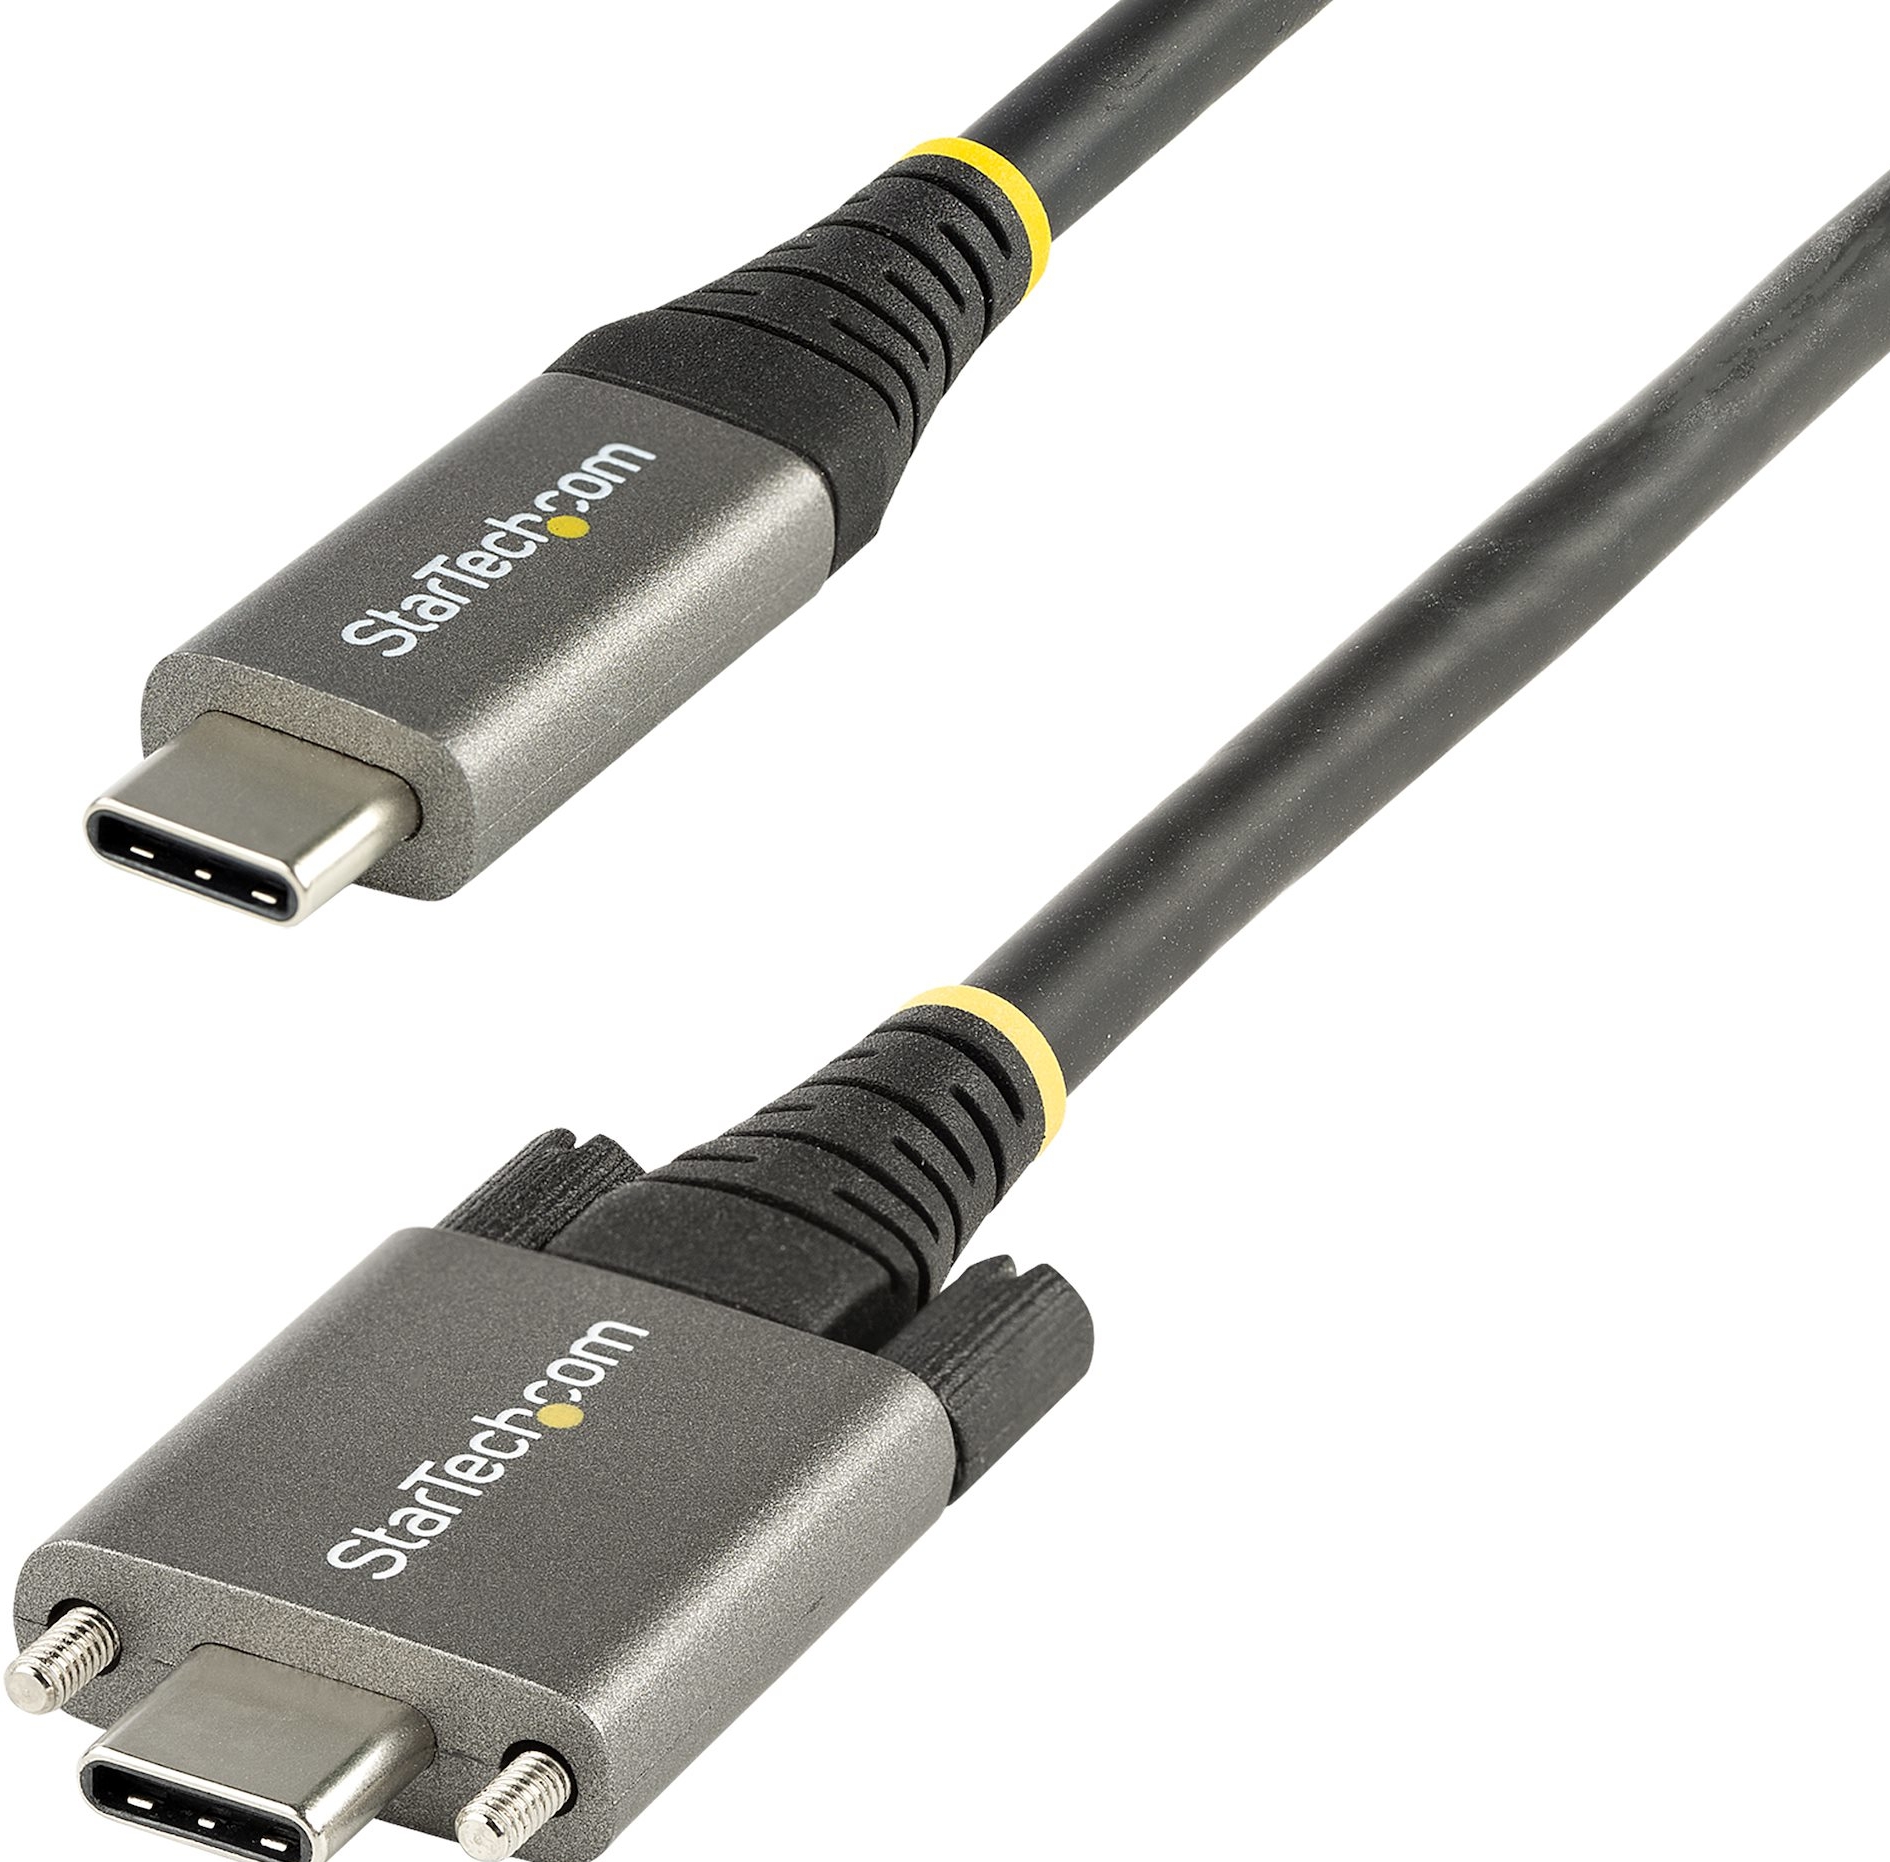 StarTech.com 50cm Vergrendelbare USB-C Kabel met Zijschroef, 10Gbps, USB 3.1/3.2 Gen 2 Type-C Kabel, 100W (5A) Power Delivery Charging, DP Alt Mode, Dual Screw Lock, USB-C Charge/S